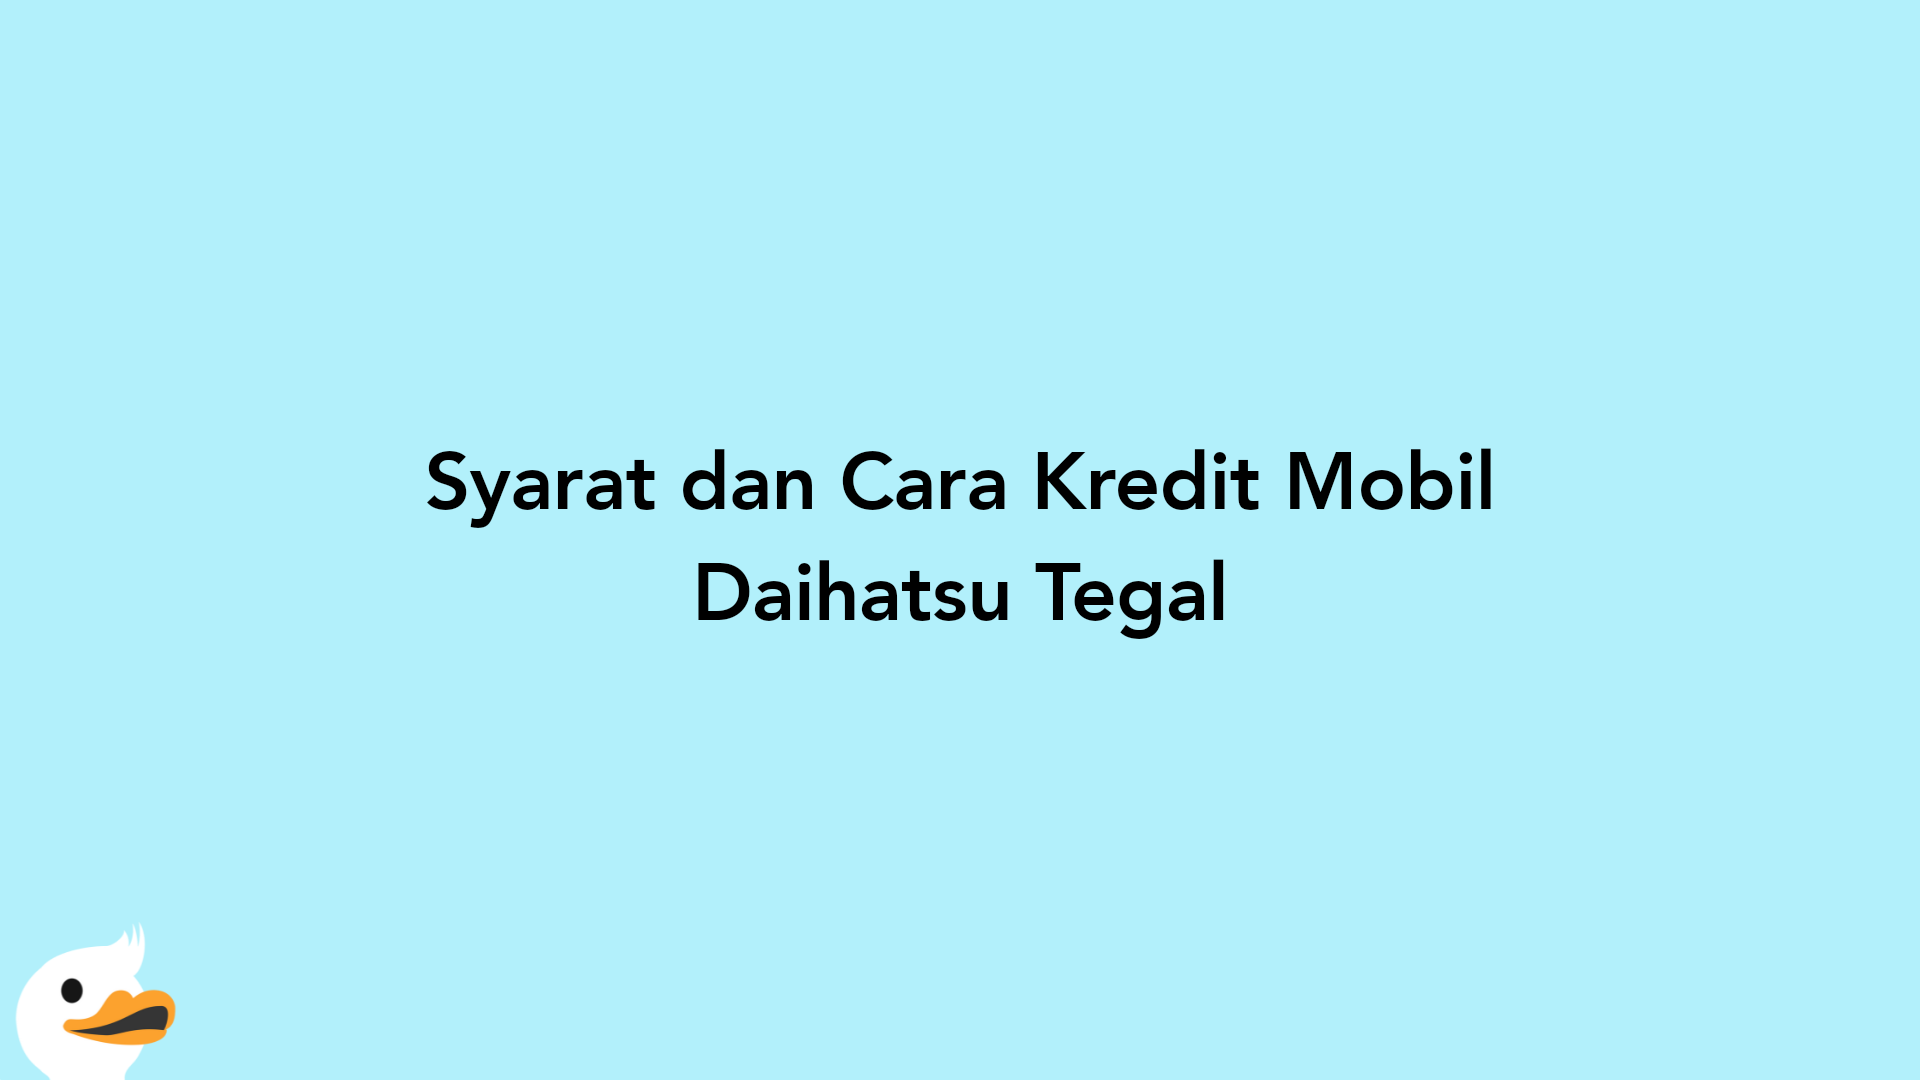 Syarat dan Cara Kredit Mobil Daihatsu Tegal